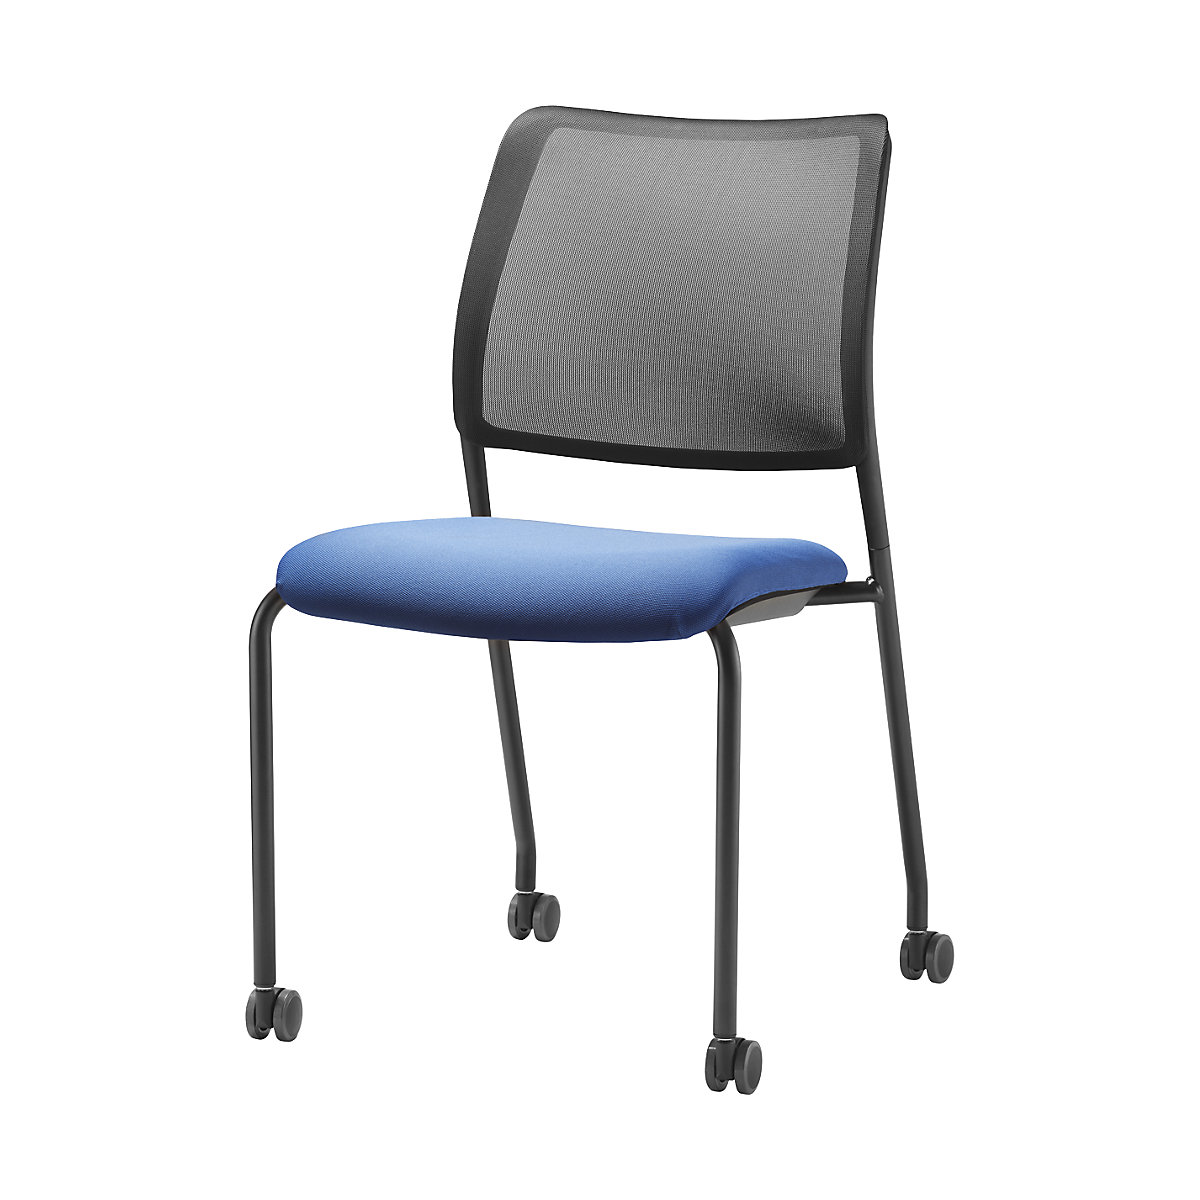 Sedežna prevleka TO-SYNC – TrendOffice, za konferenčni stol, azurno modre barve-5